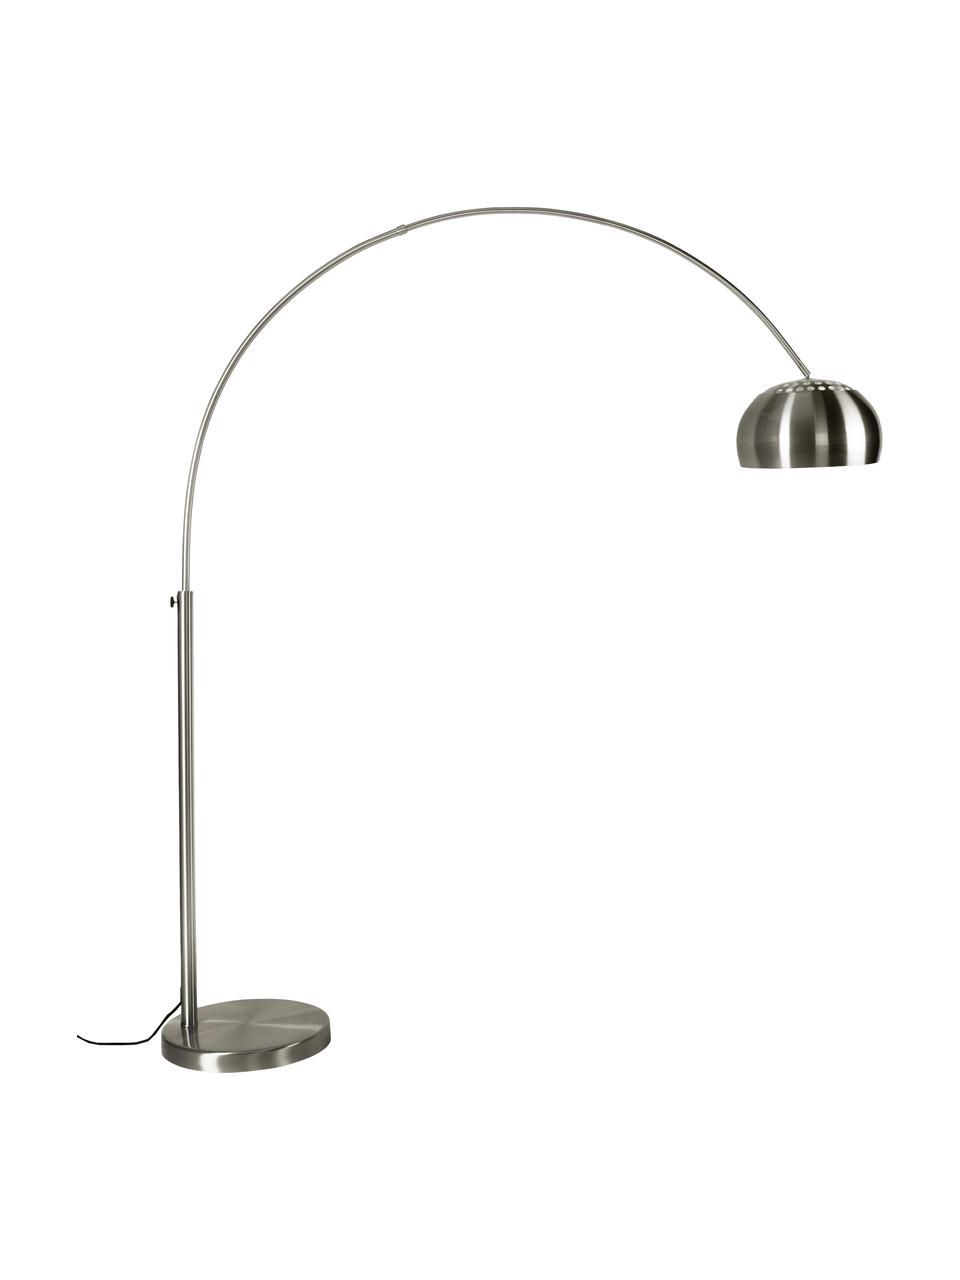 Lampa podłogowa w kształcie łuku Metal Bow, Stelaż: metal szczotkowany, Metal, S 170 x W 205 cm